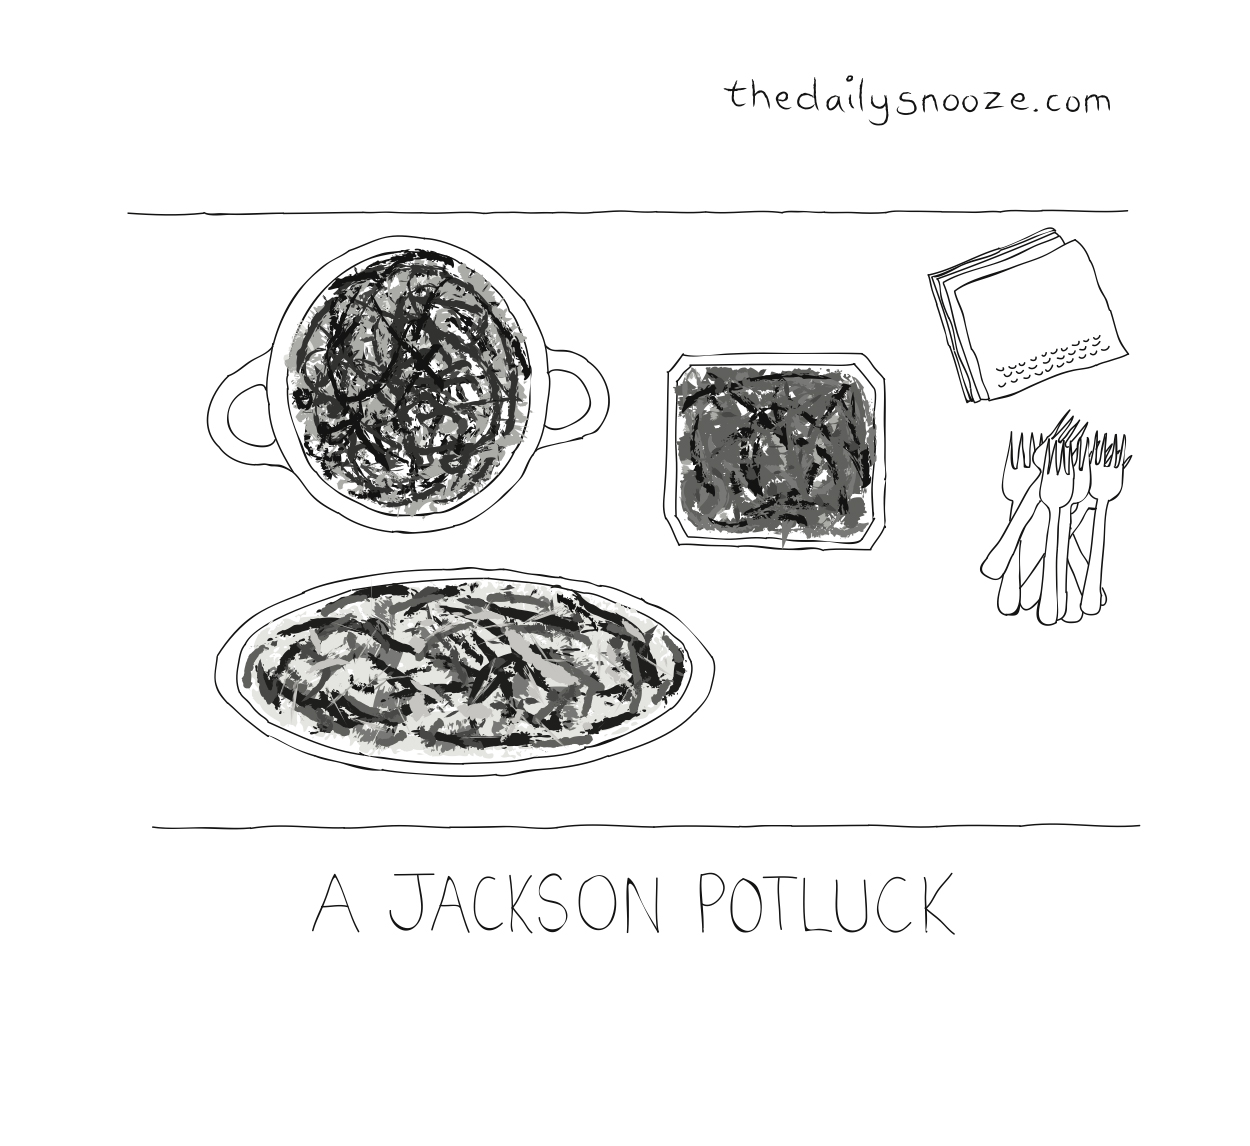 A Jackson Potluck